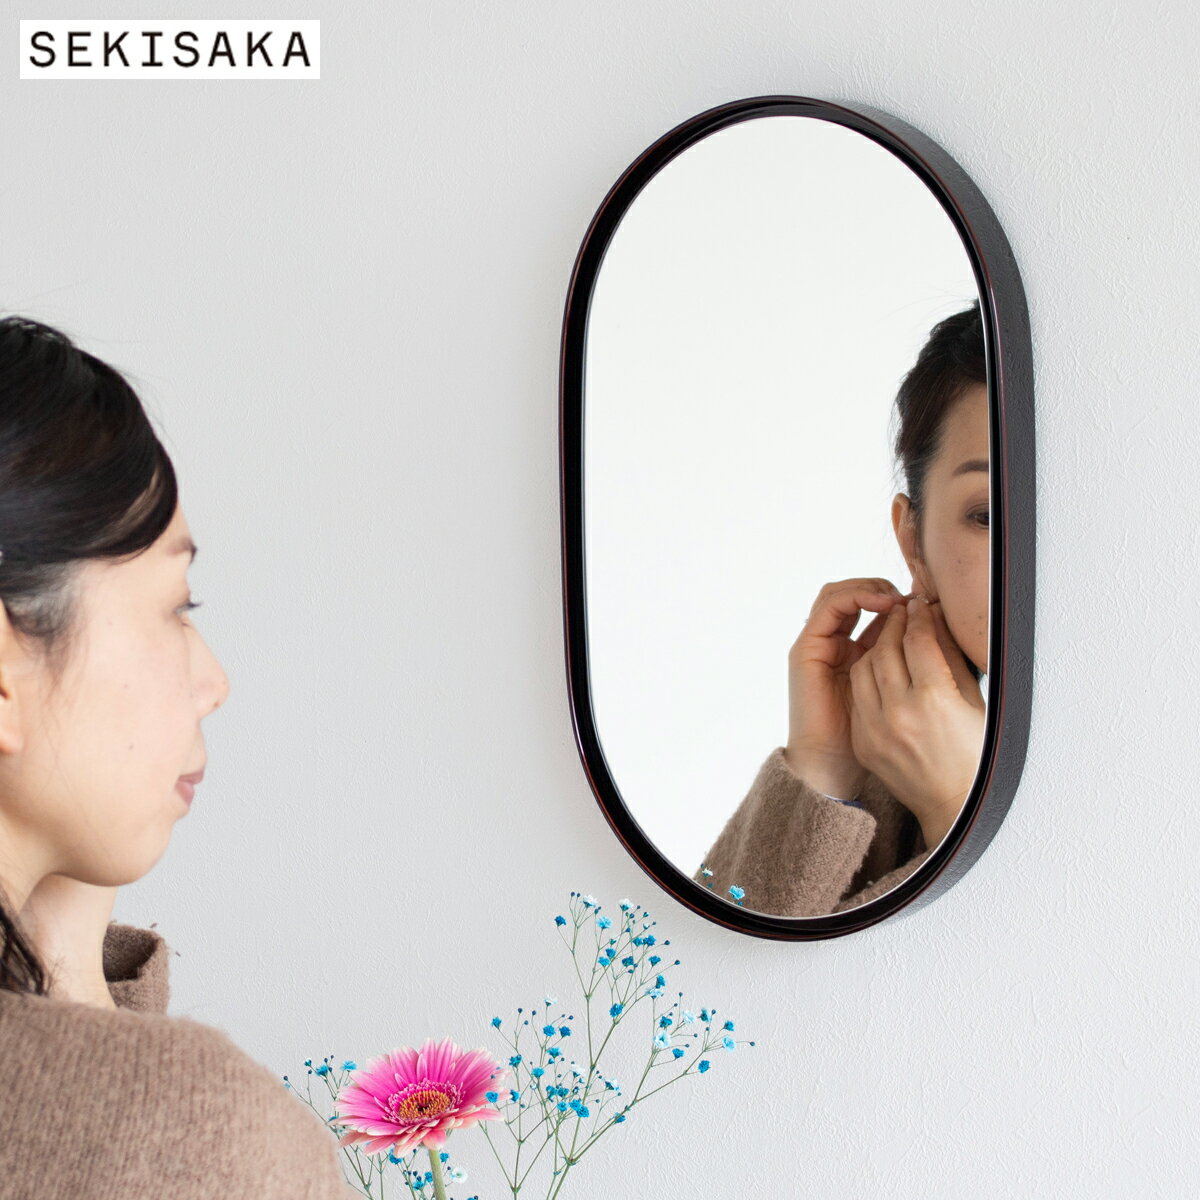 【クーポン対象 6/11 10:59まで】 鏡 壁掛け 丸 ミラー 丸い 楕円 ウォールミラー 木製 フレーム 漆 漆塗り 日本製 SEKISAKA セキサカ TRACE Koban mirror Aka-tama 壁掛けミラー オーバル 壁…